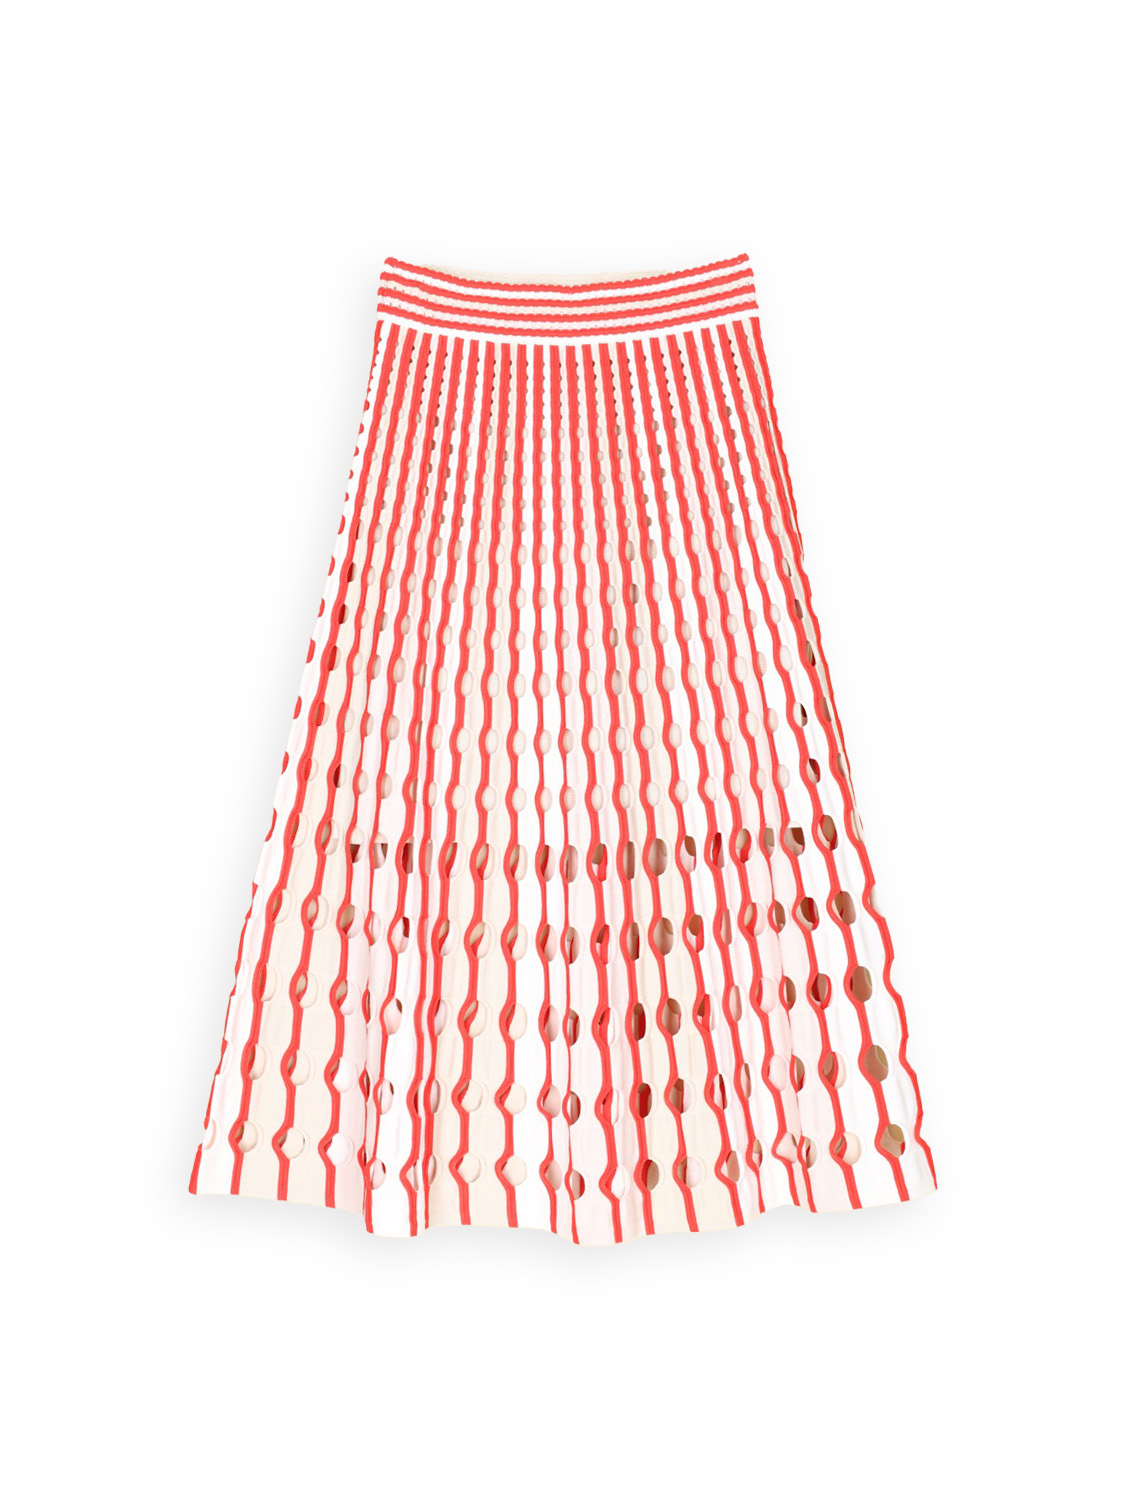 Simkhai Jax – Skirt with hole pattern   multi M